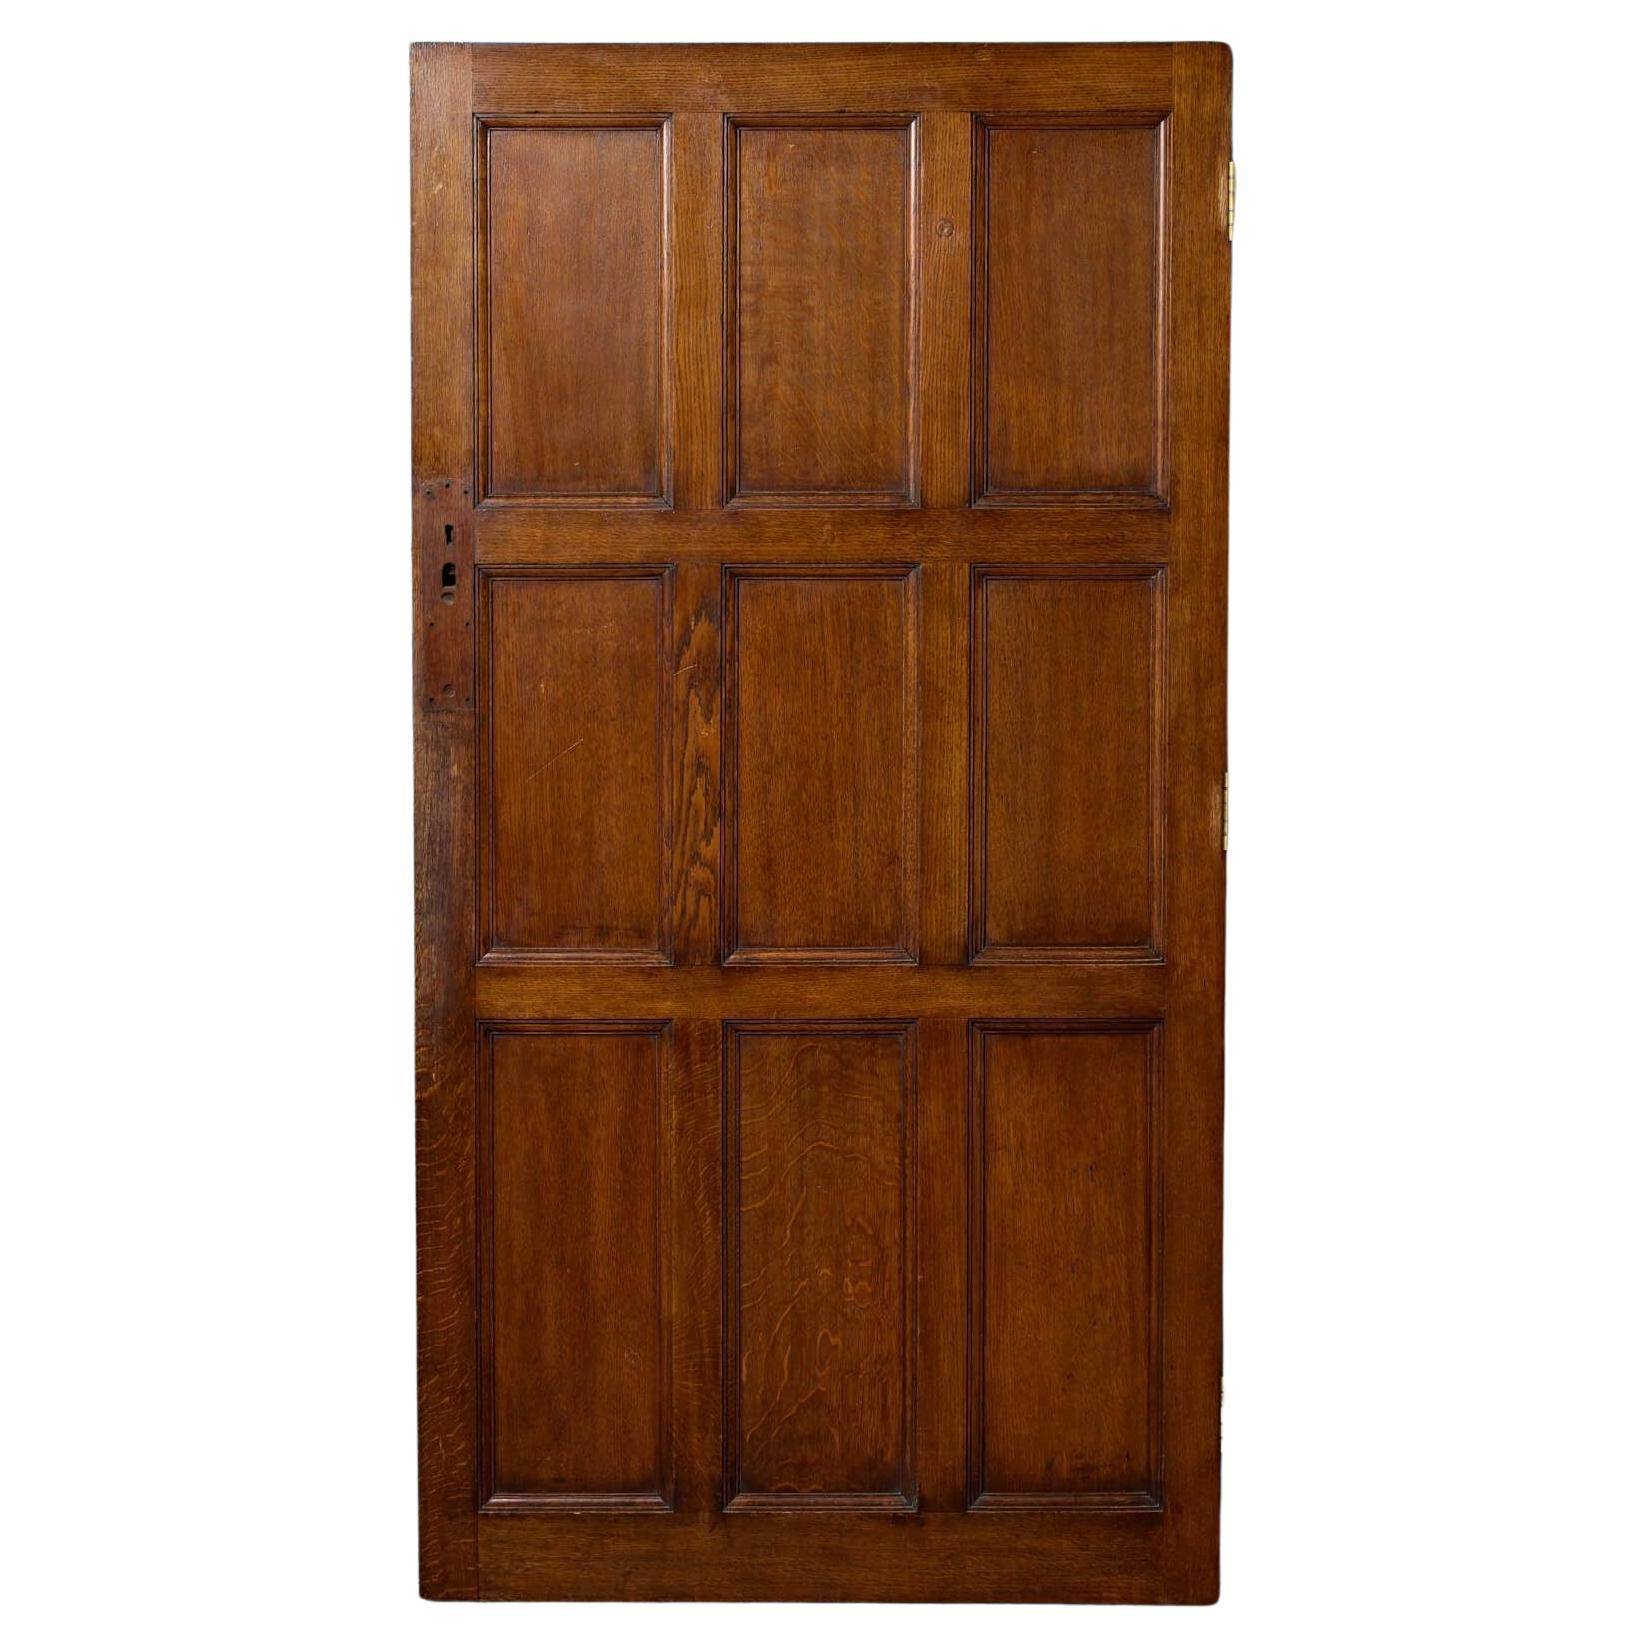 Antique 9 Panel Solid Oak Door For Sale